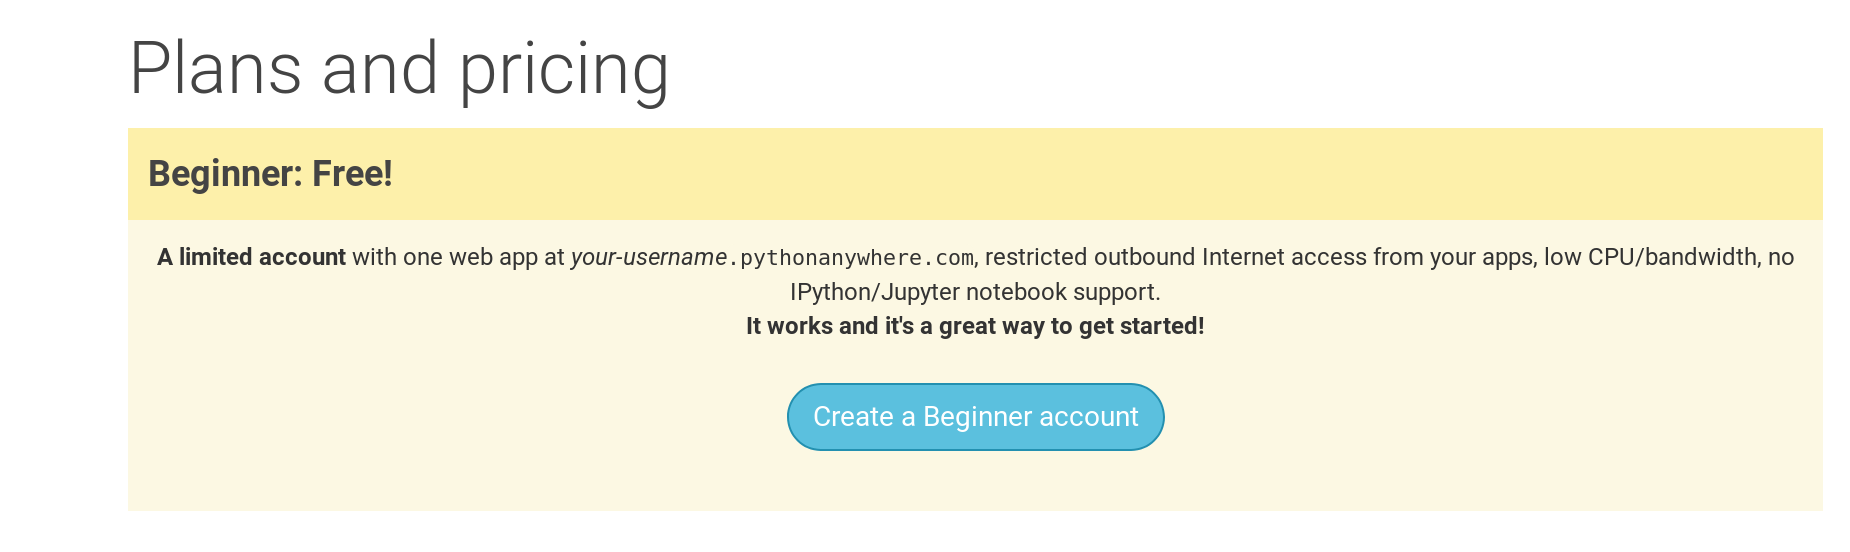 La pagina de entrada de Python Anywhere muestra el botón para crear una cuenta "Principiante"